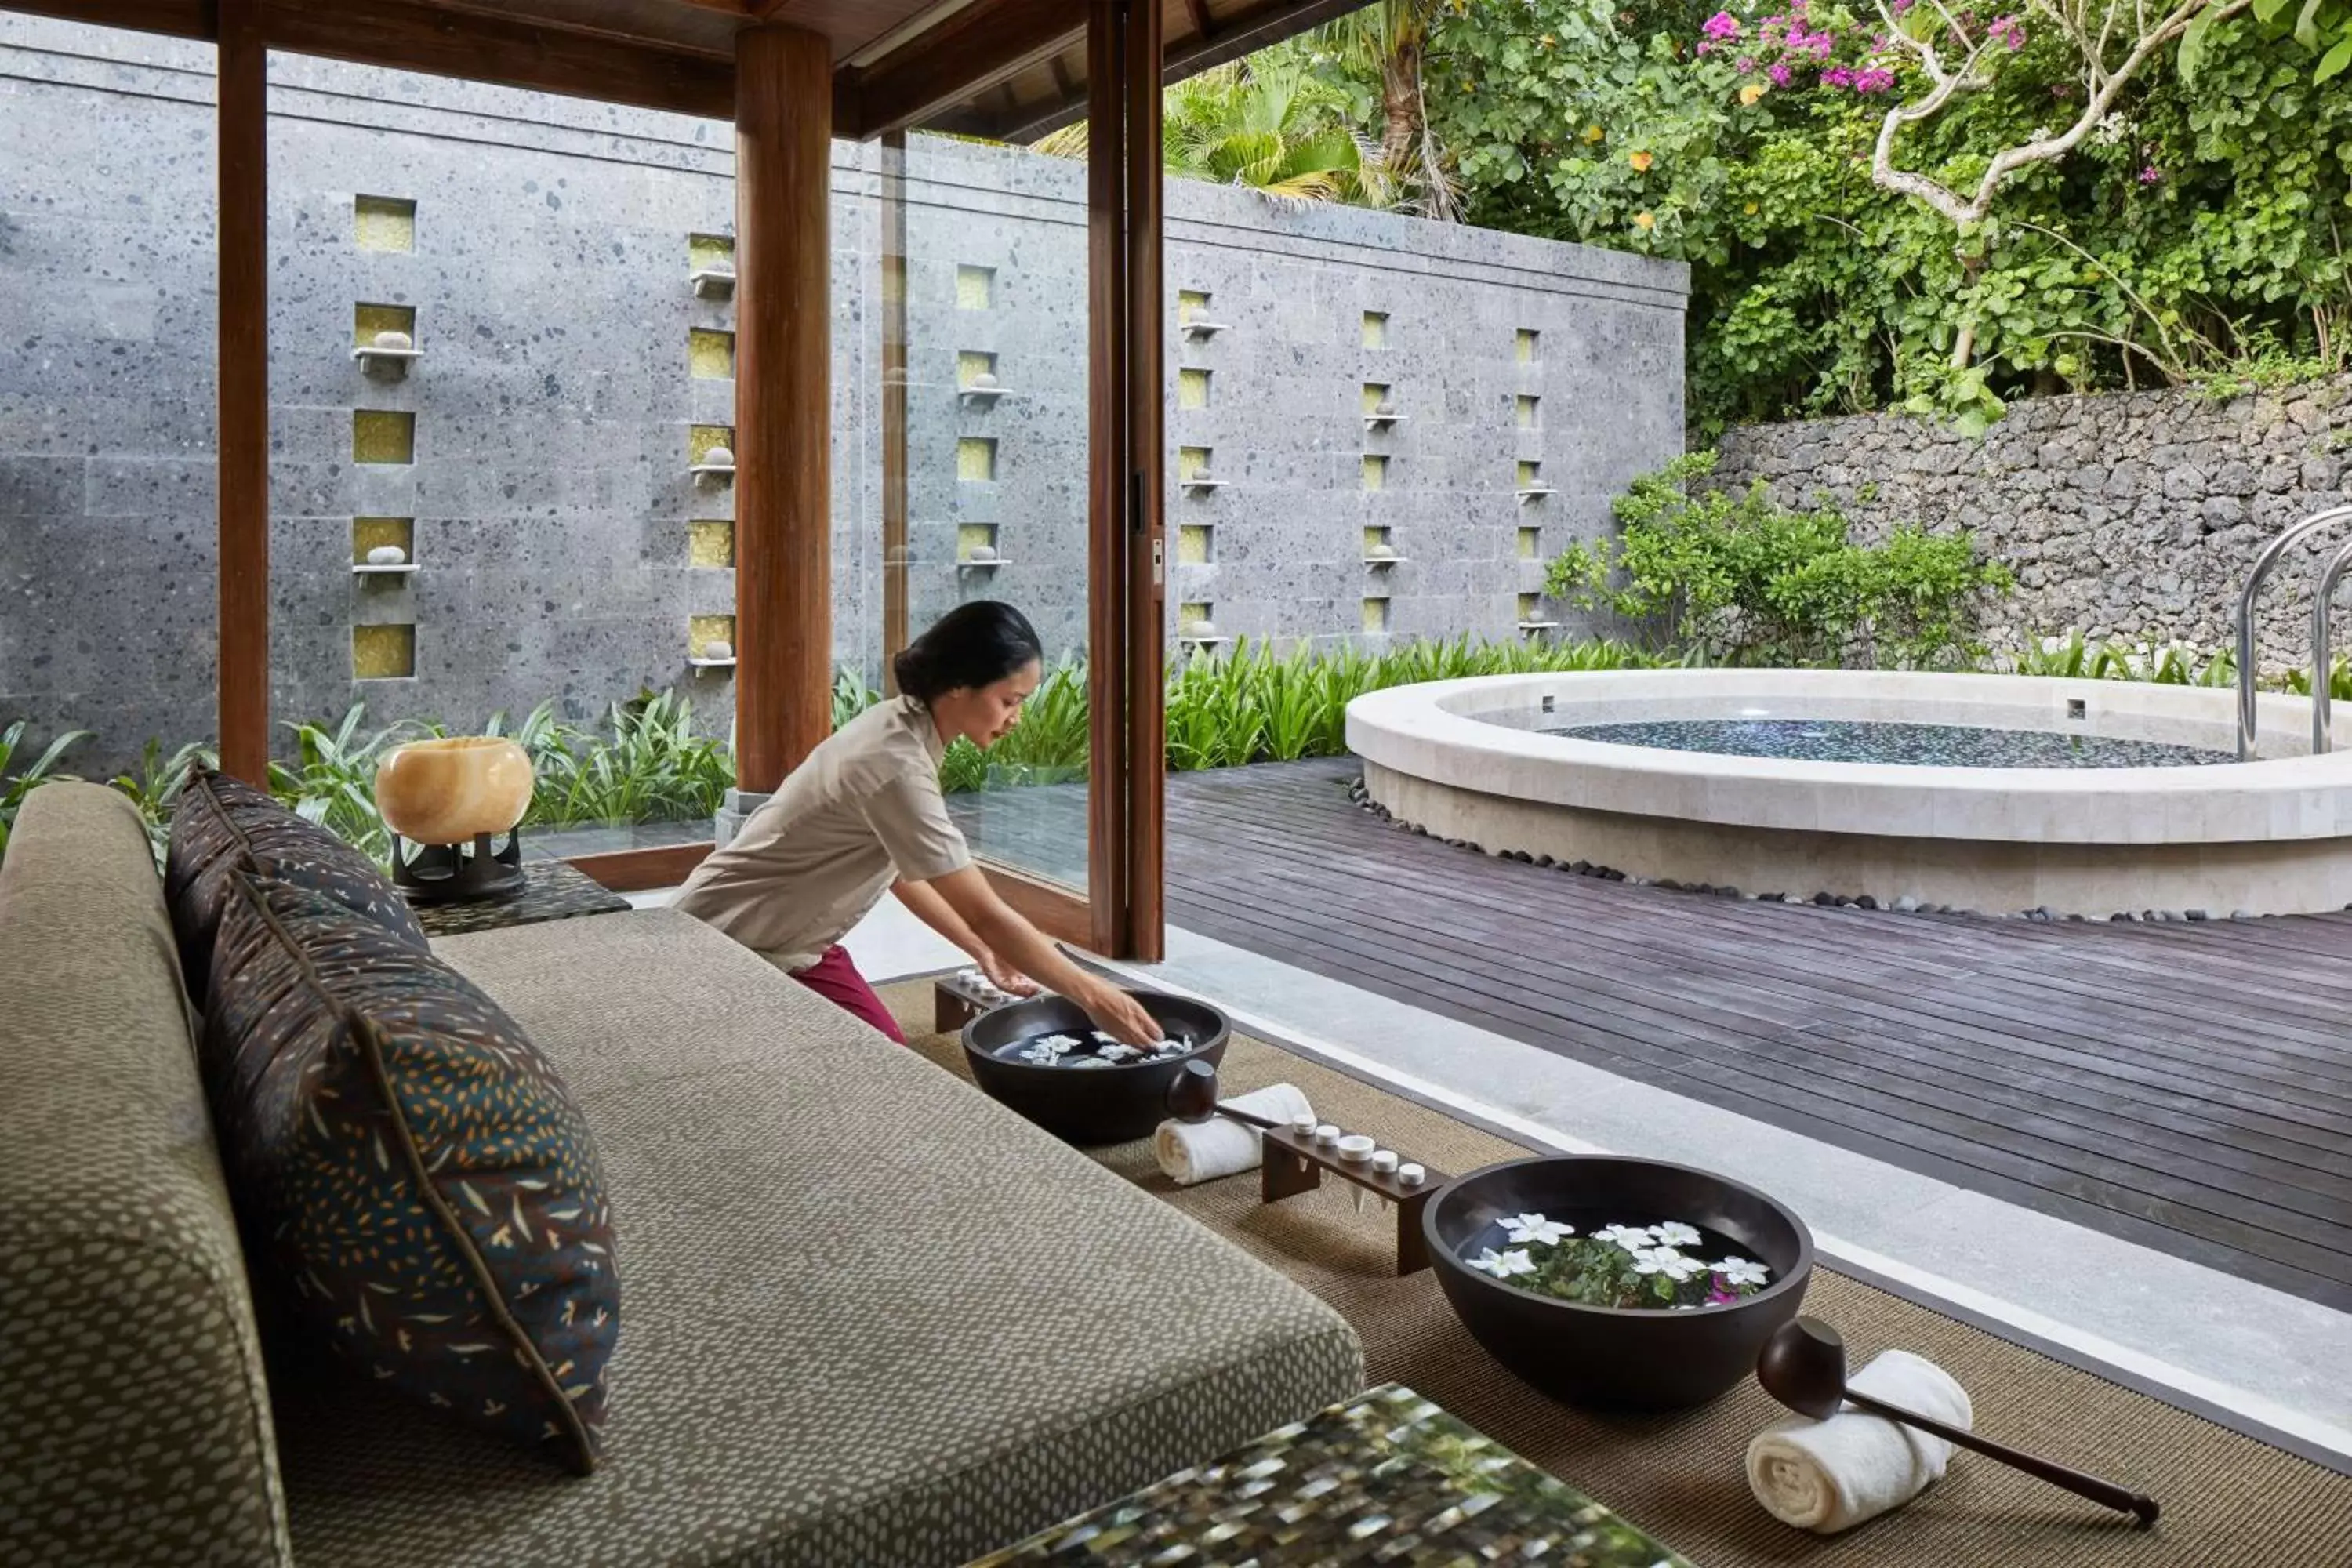 Spa and wellness centre/facilities in Hyatt Regency Bali